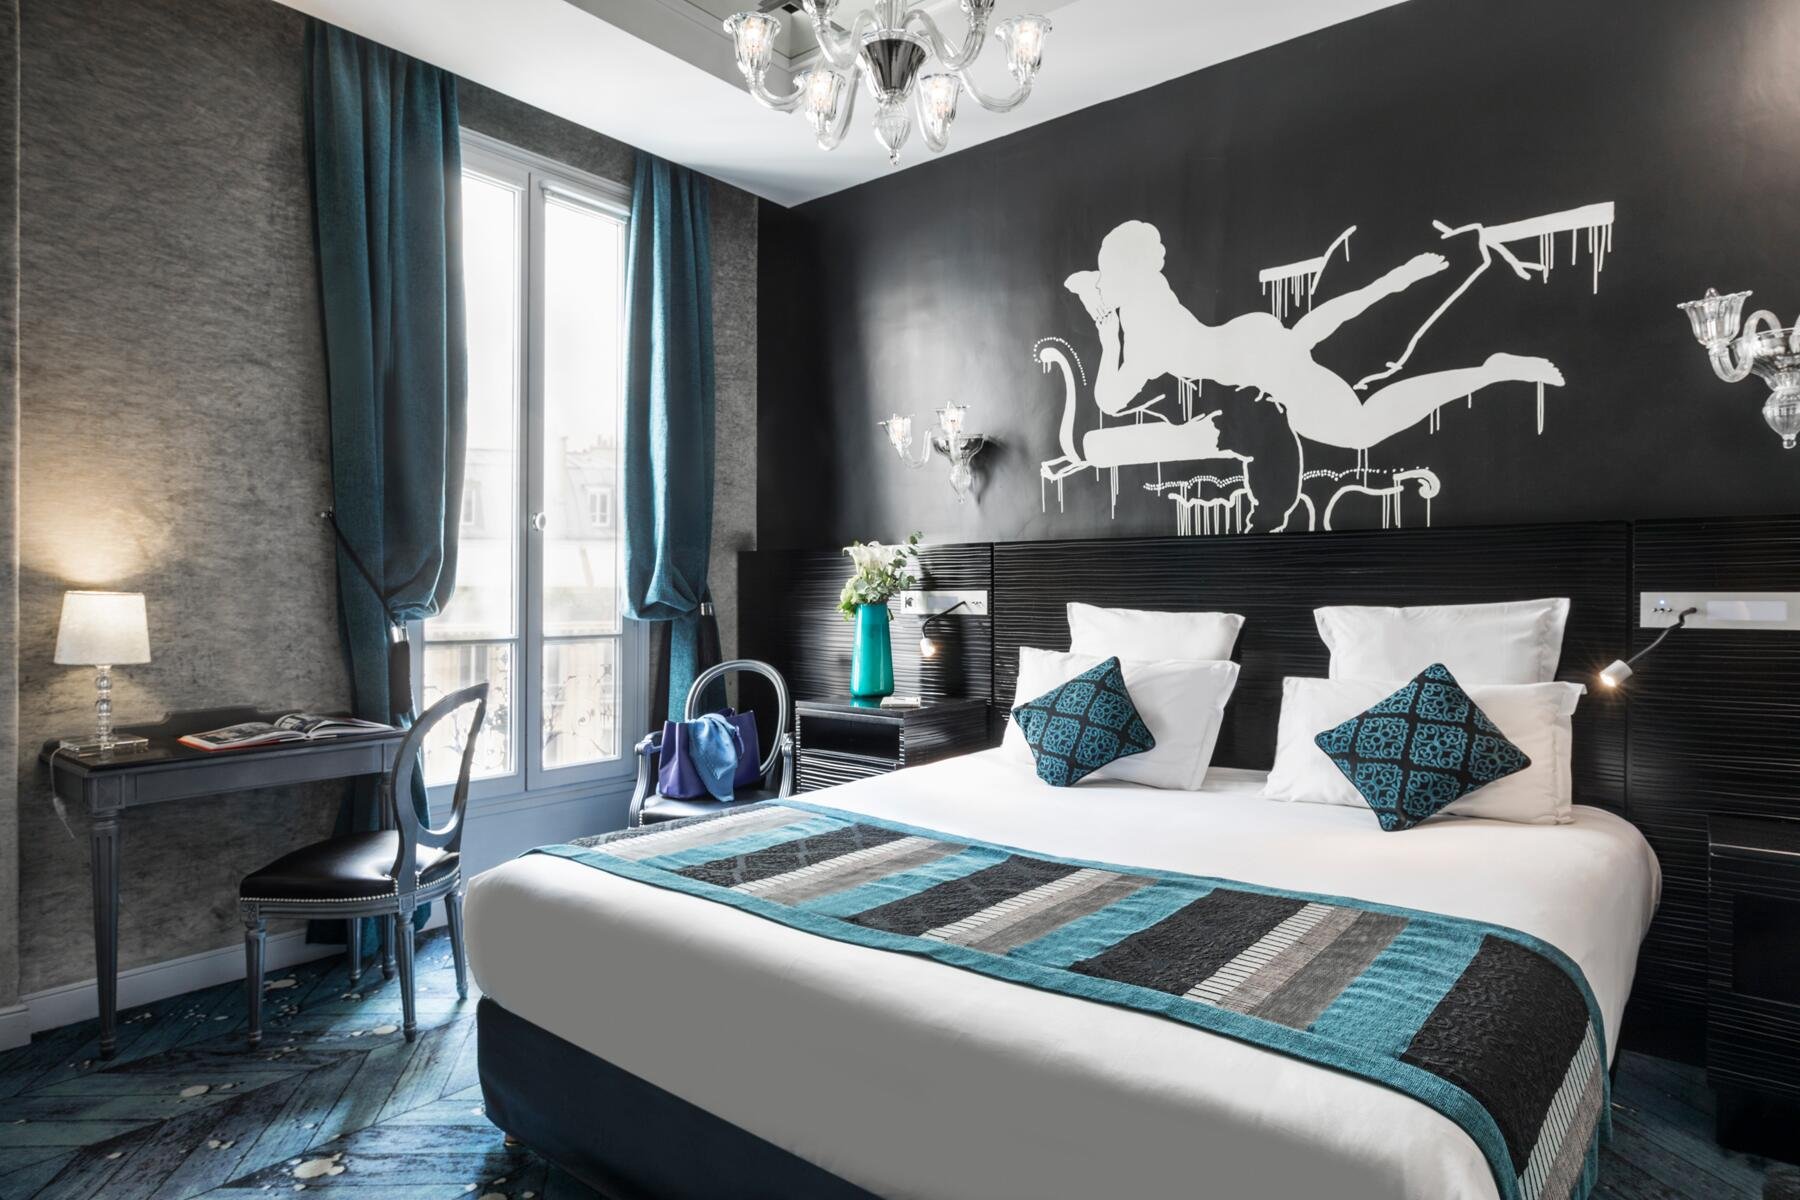 Maison Albar Hotels Le Champs-Elysées | Place de l'Etoile Hotel